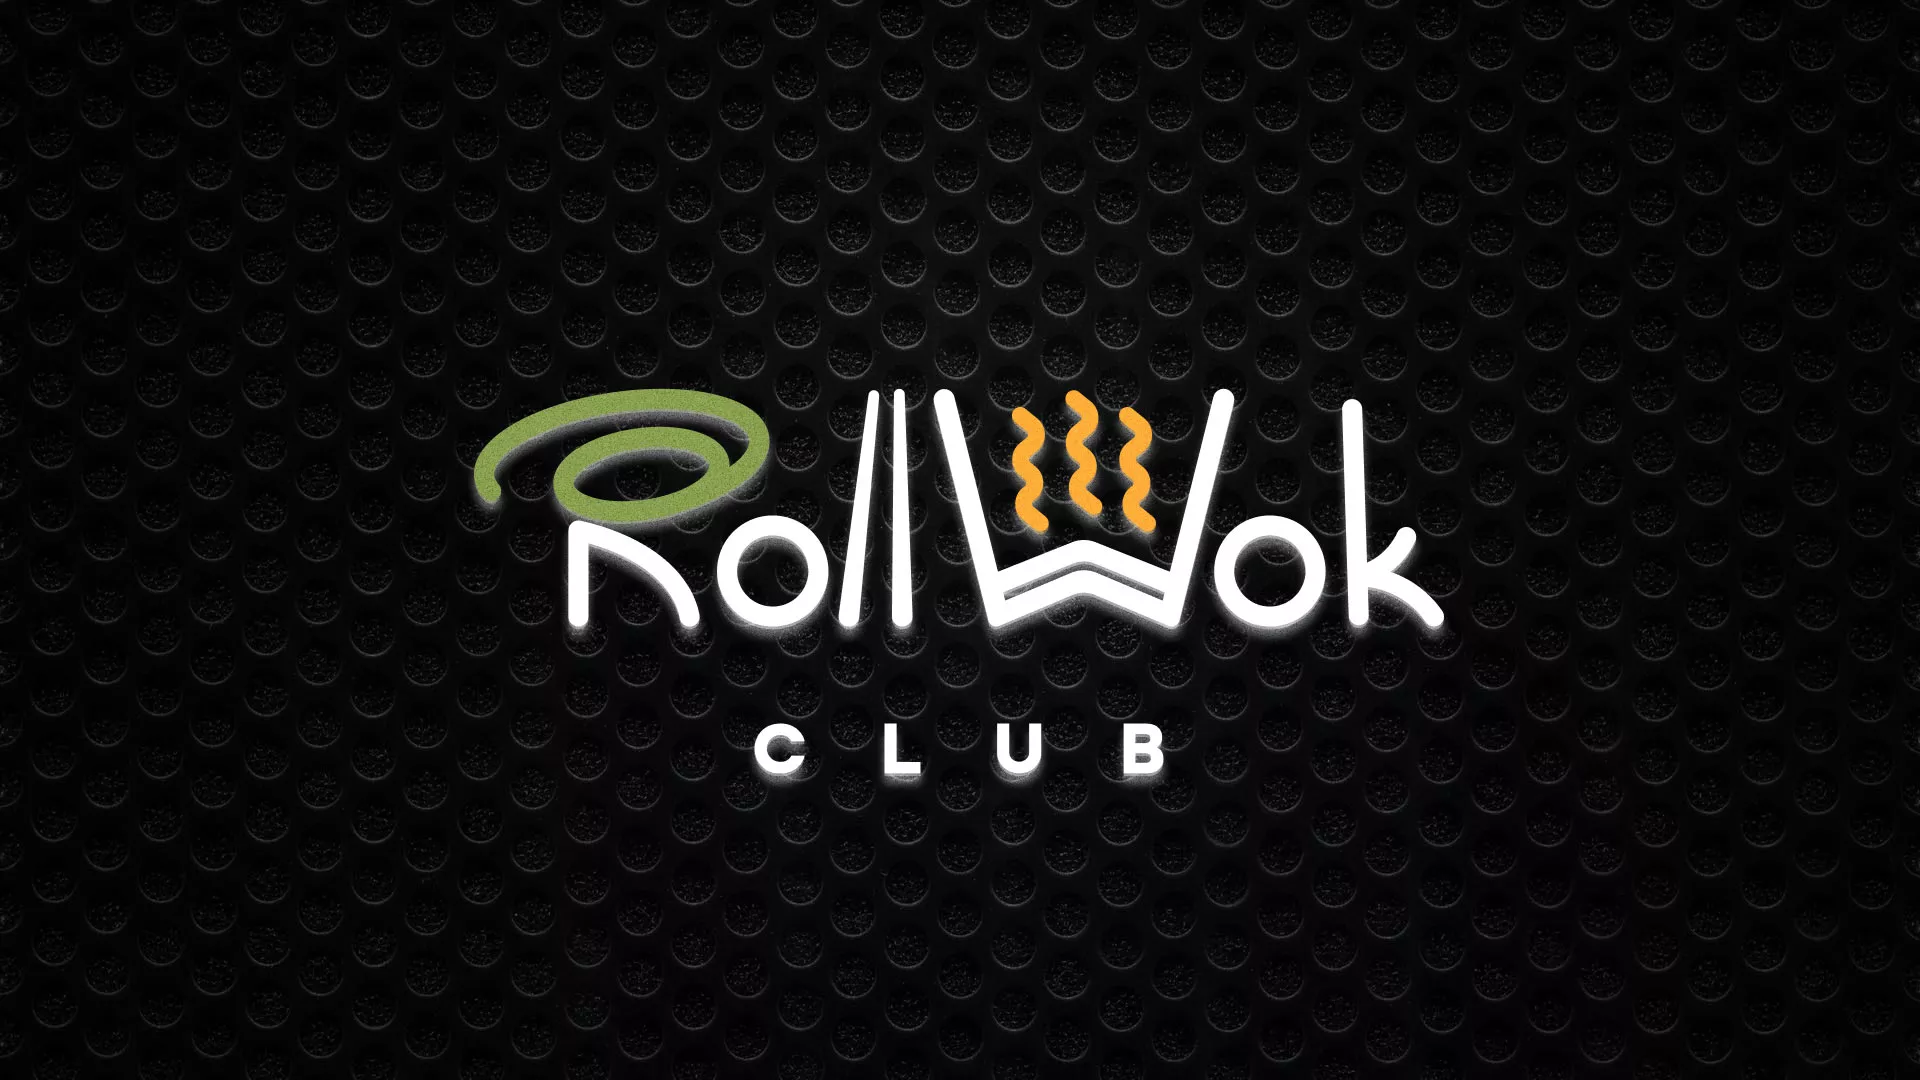 Брендирование торговых точек суши-бара «Roll Wok Club» в Норильске